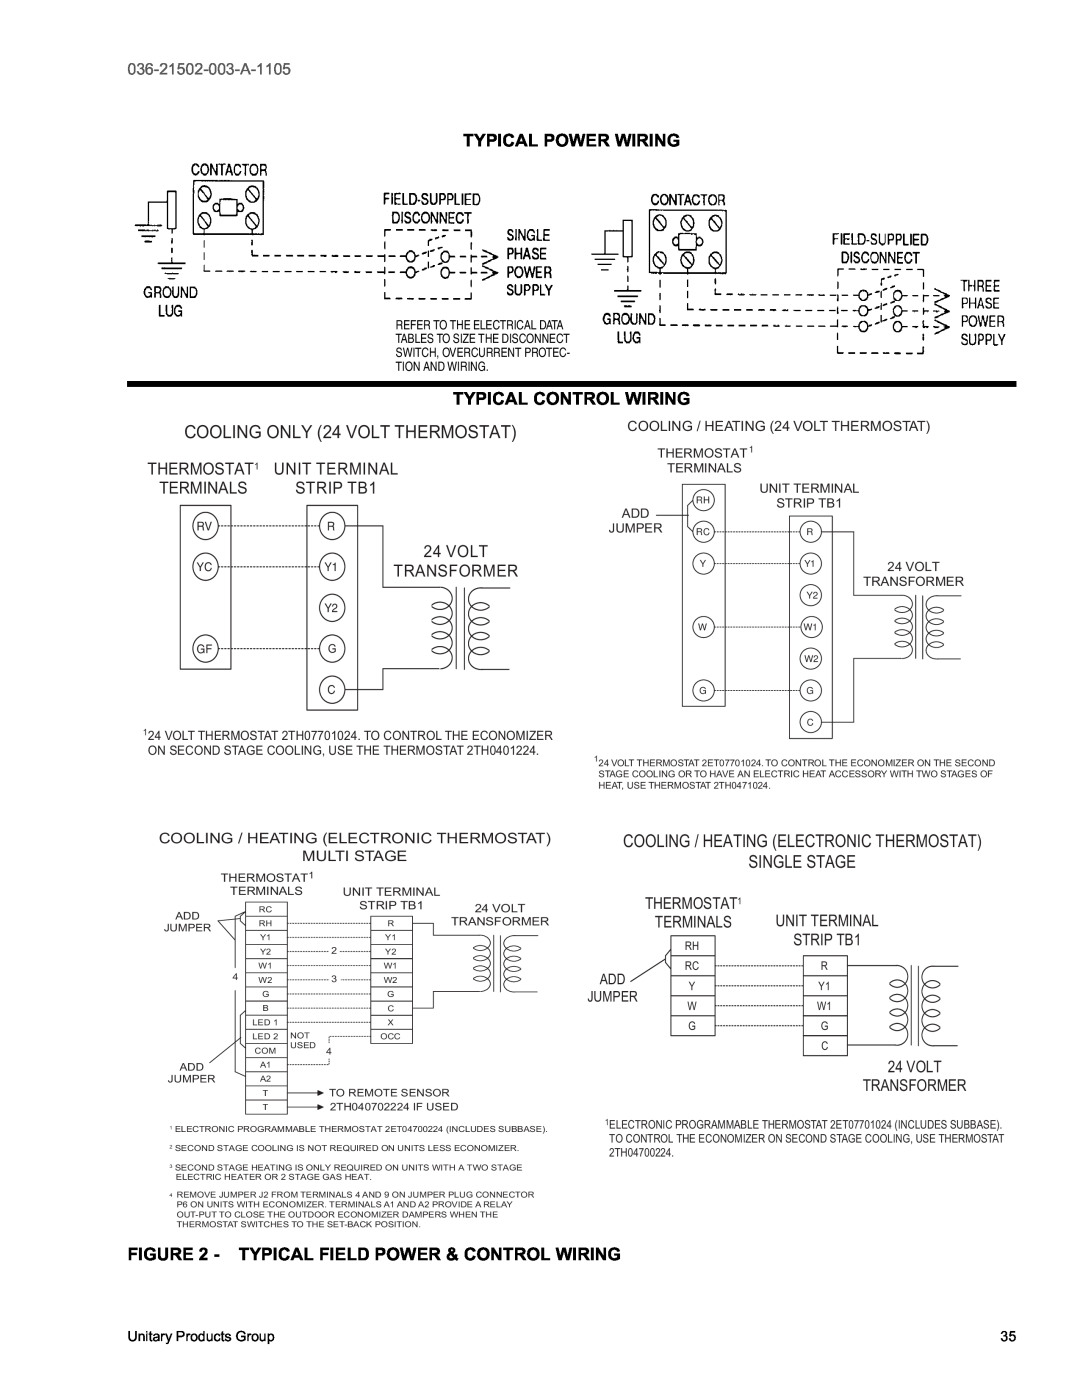 York DM 072 warranty Typical Power Wiring, Typical Field Power & Control Wiring, Typical Control Wiring, Volt, Transformer 